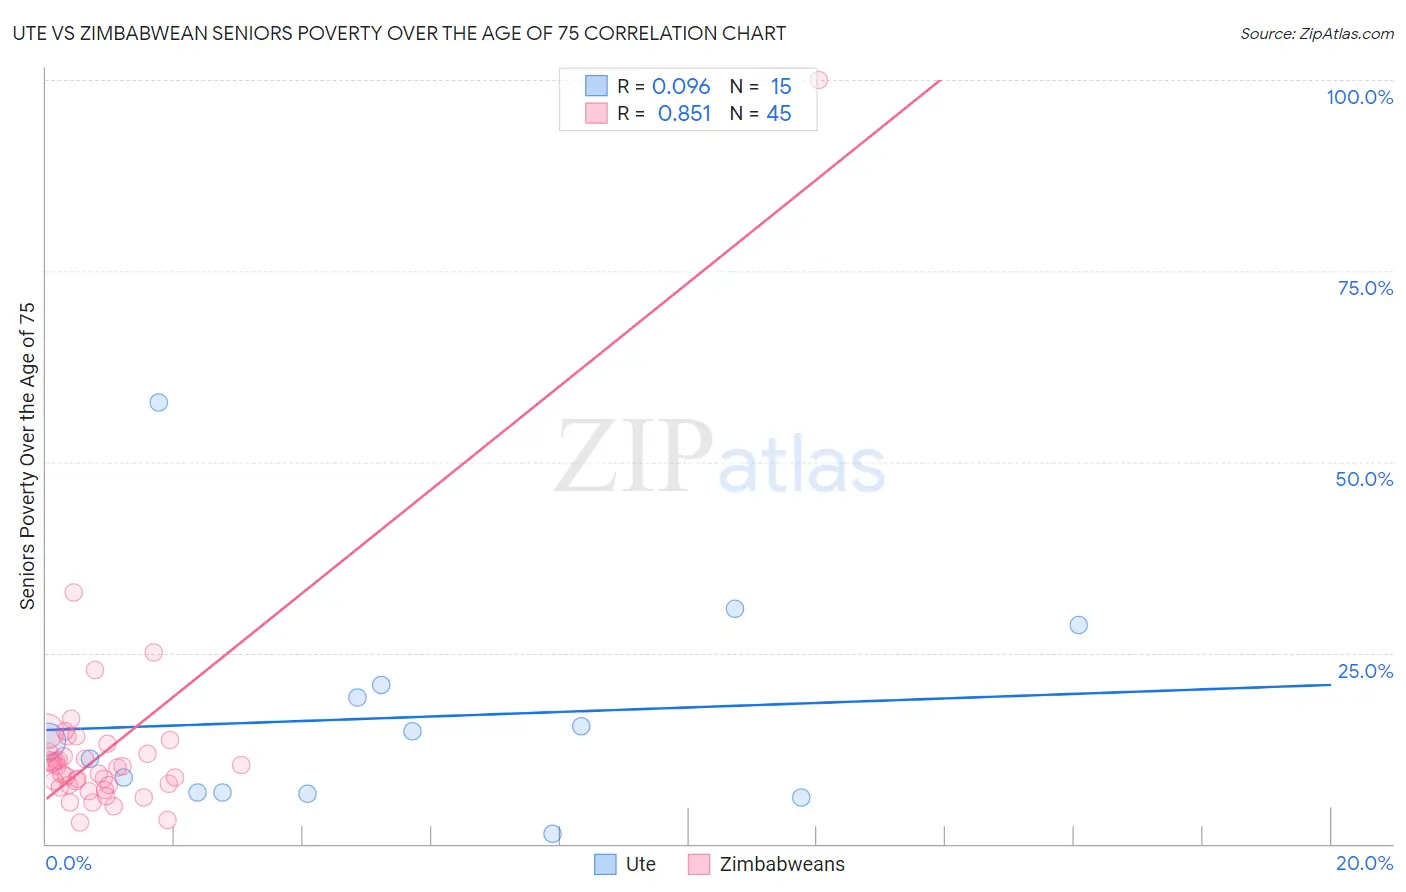 Ute vs Zimbabwean Seniors Poverty Over the Age of 75